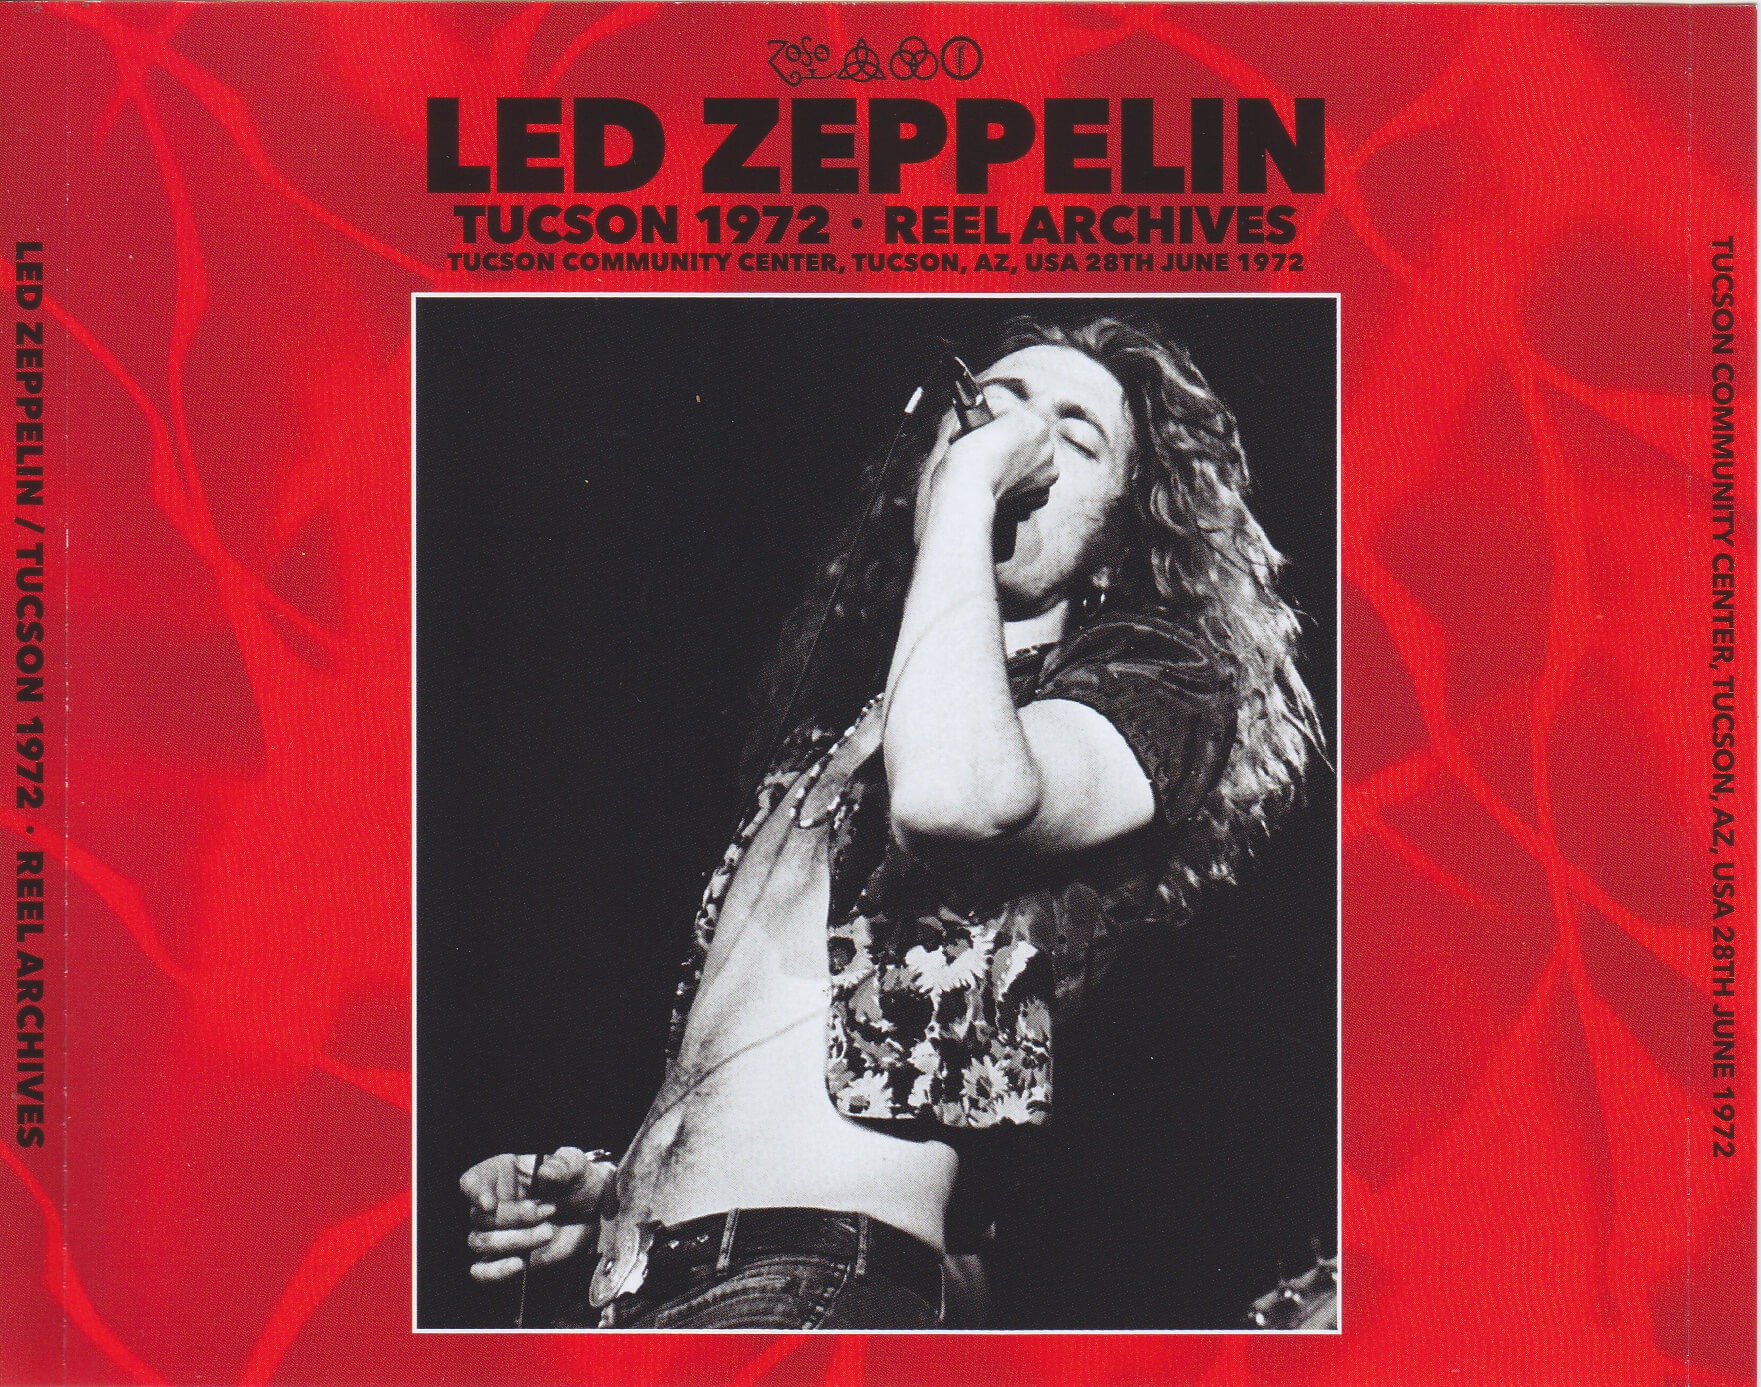 Led Zeppelin / Tucson 1972 Reel Archives / 3CD – GiGinJapan